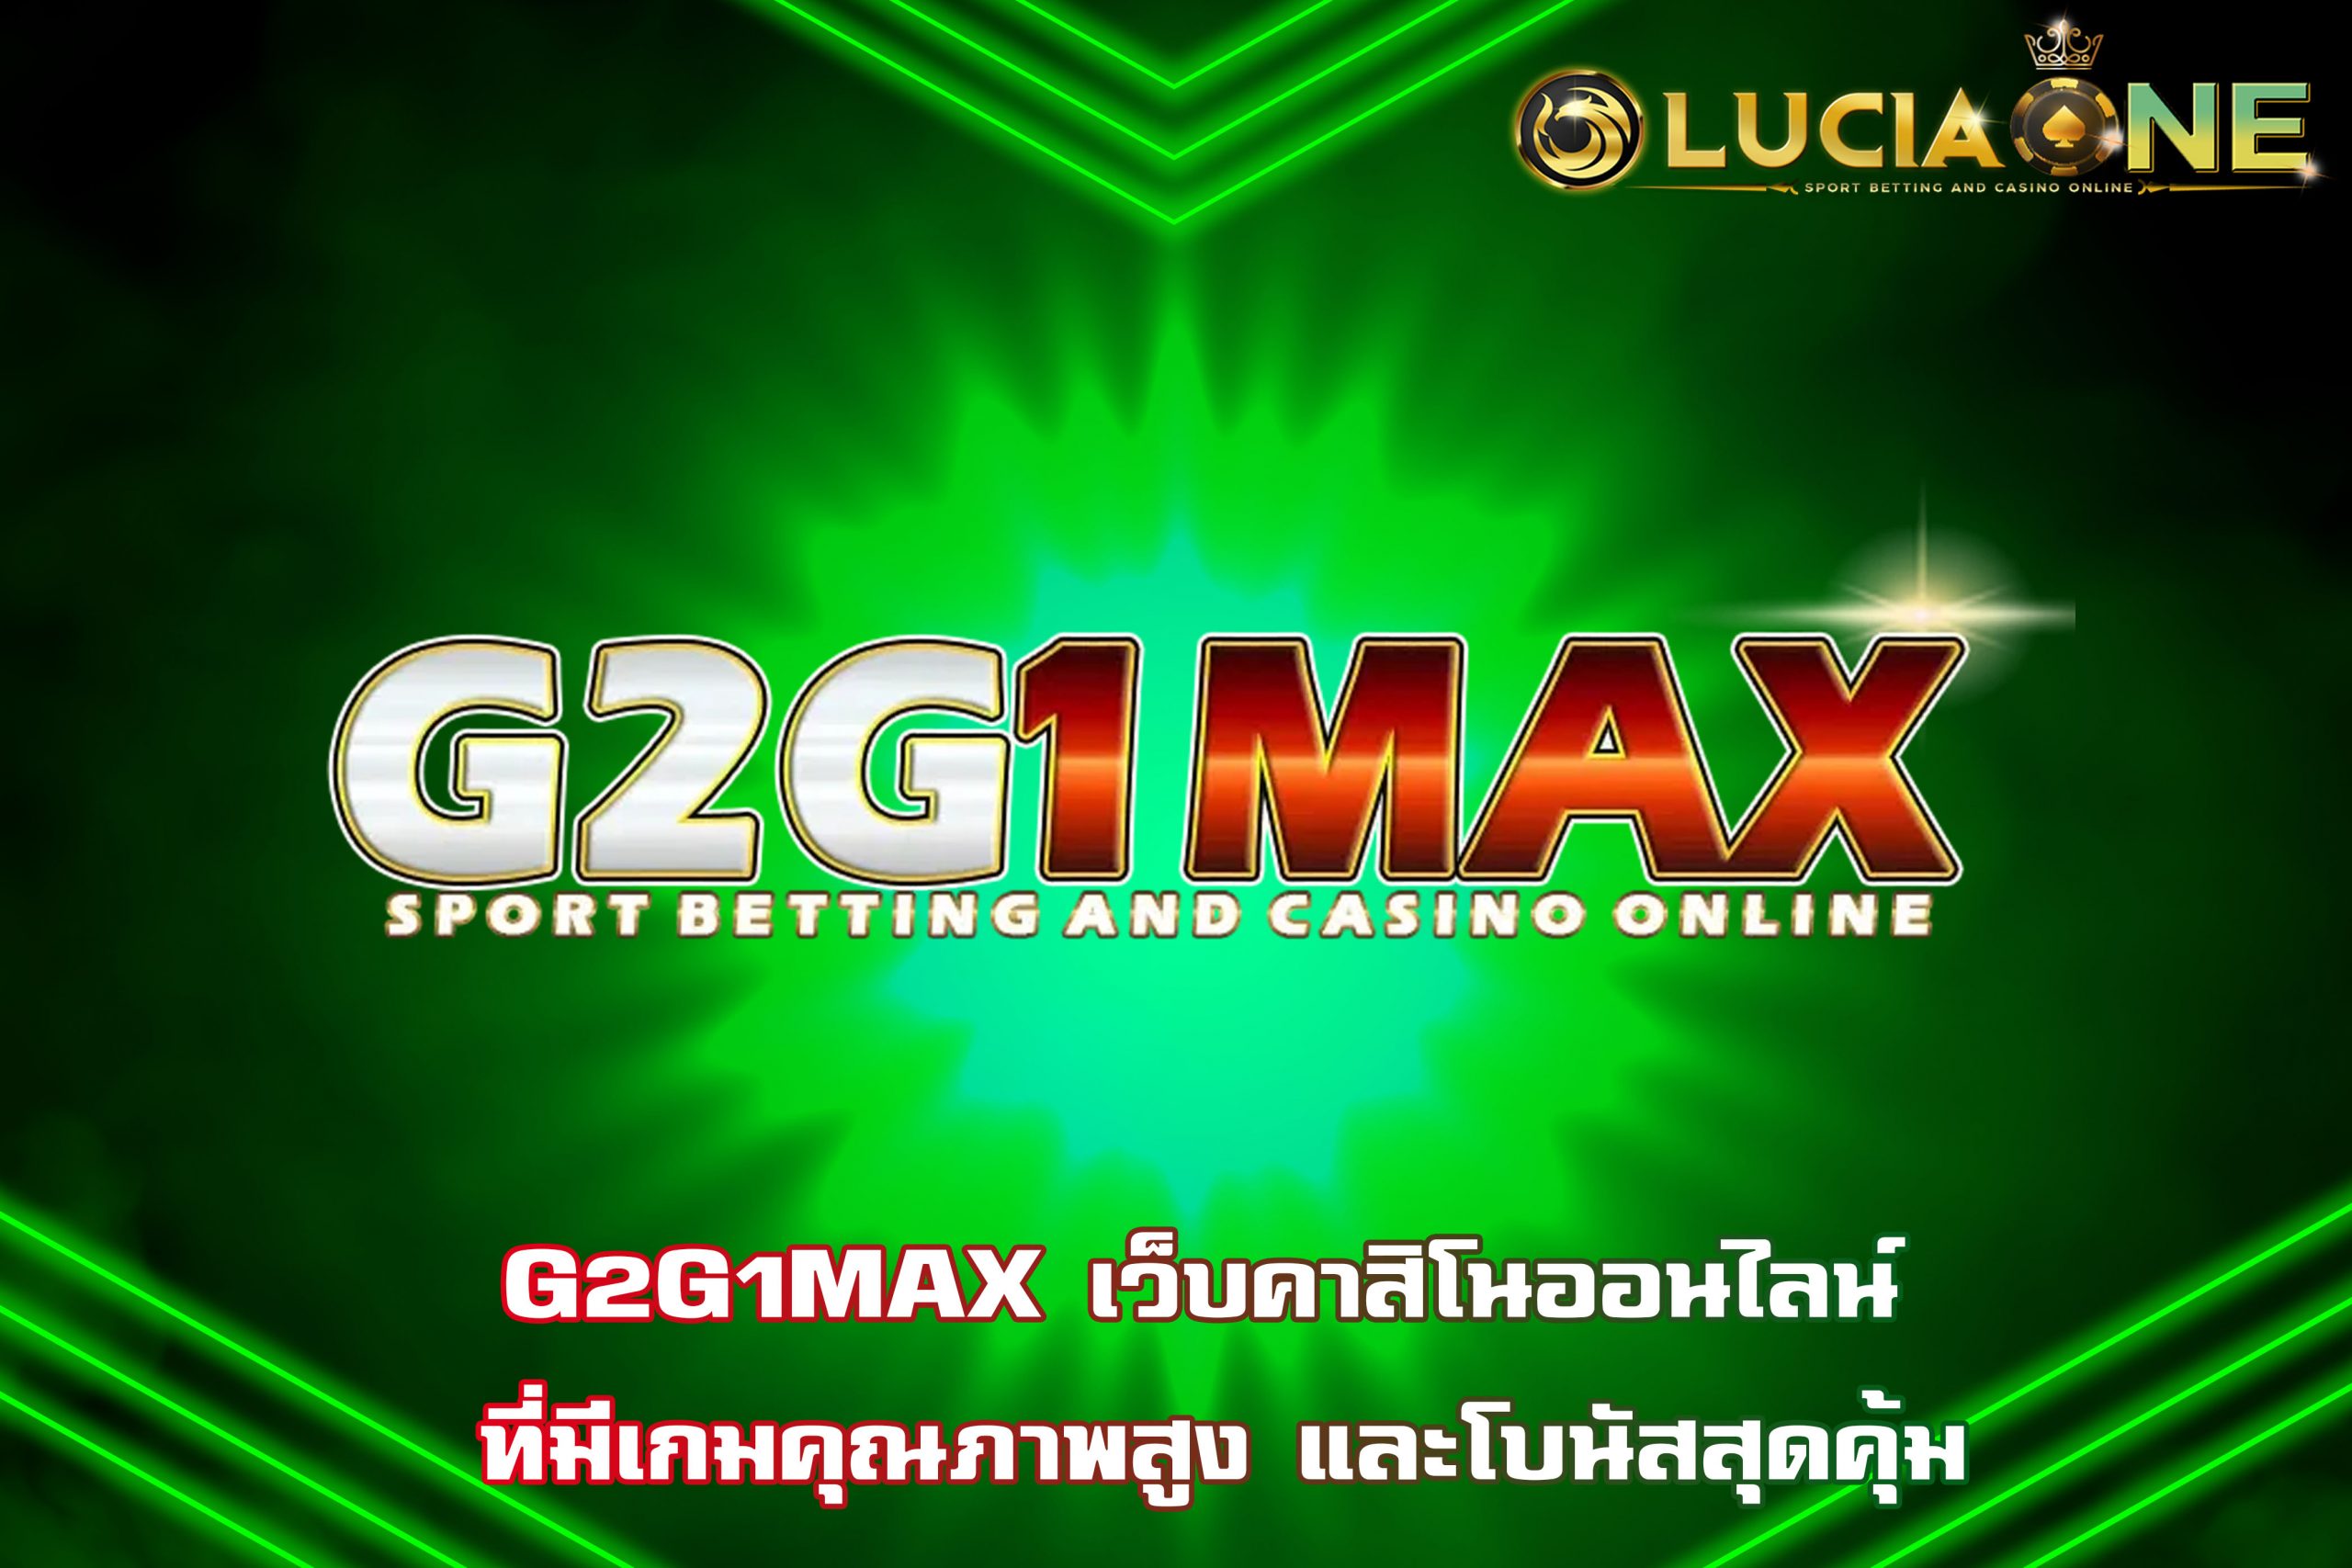 G2G1MAX